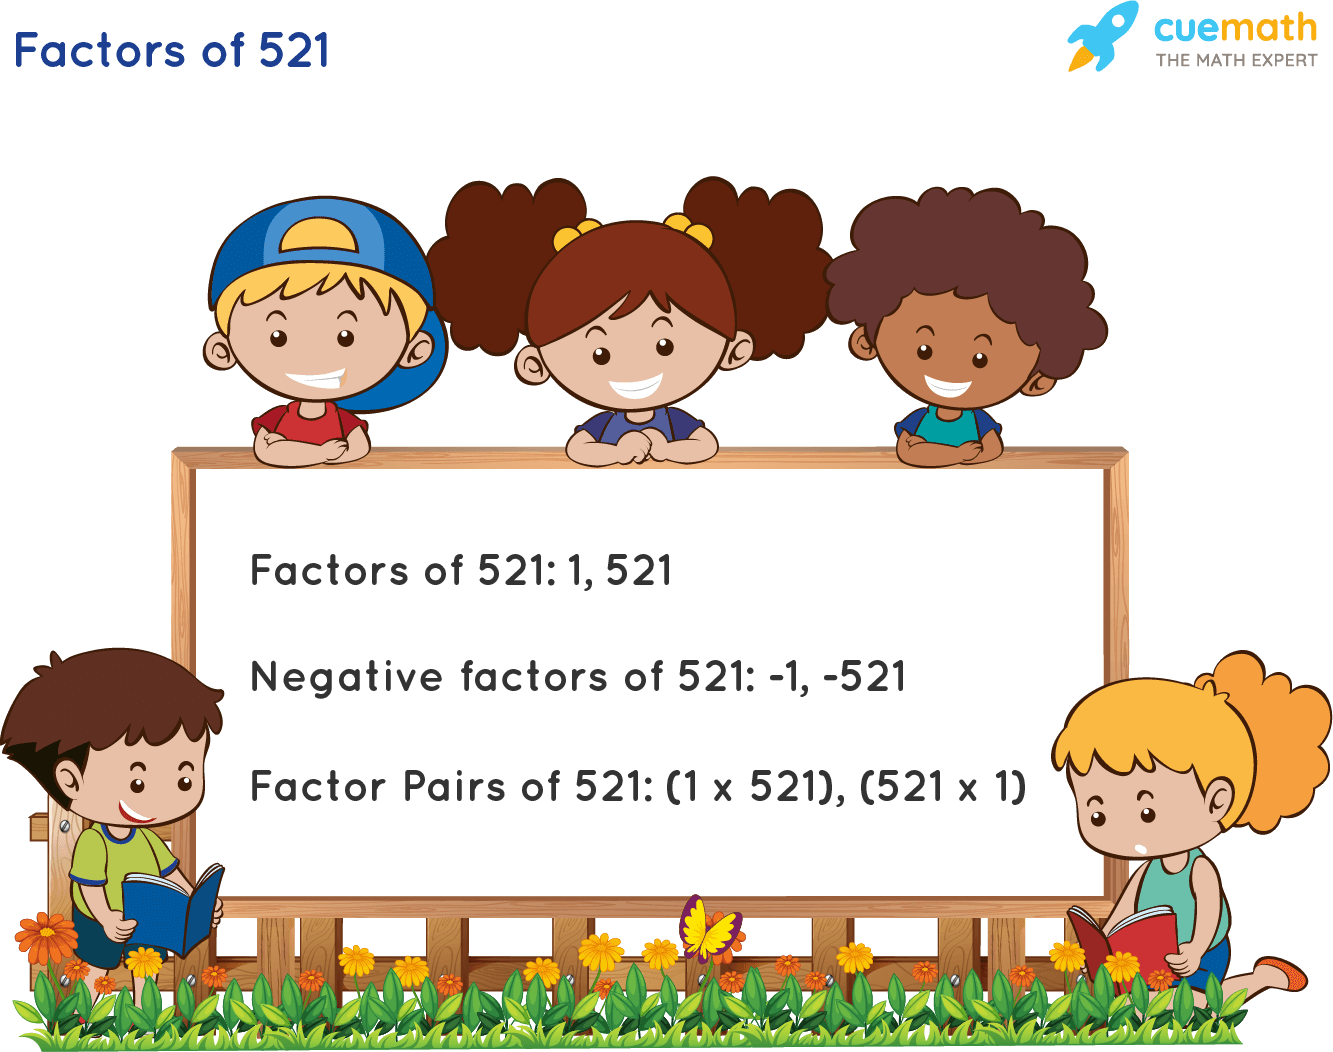 Factors of 521